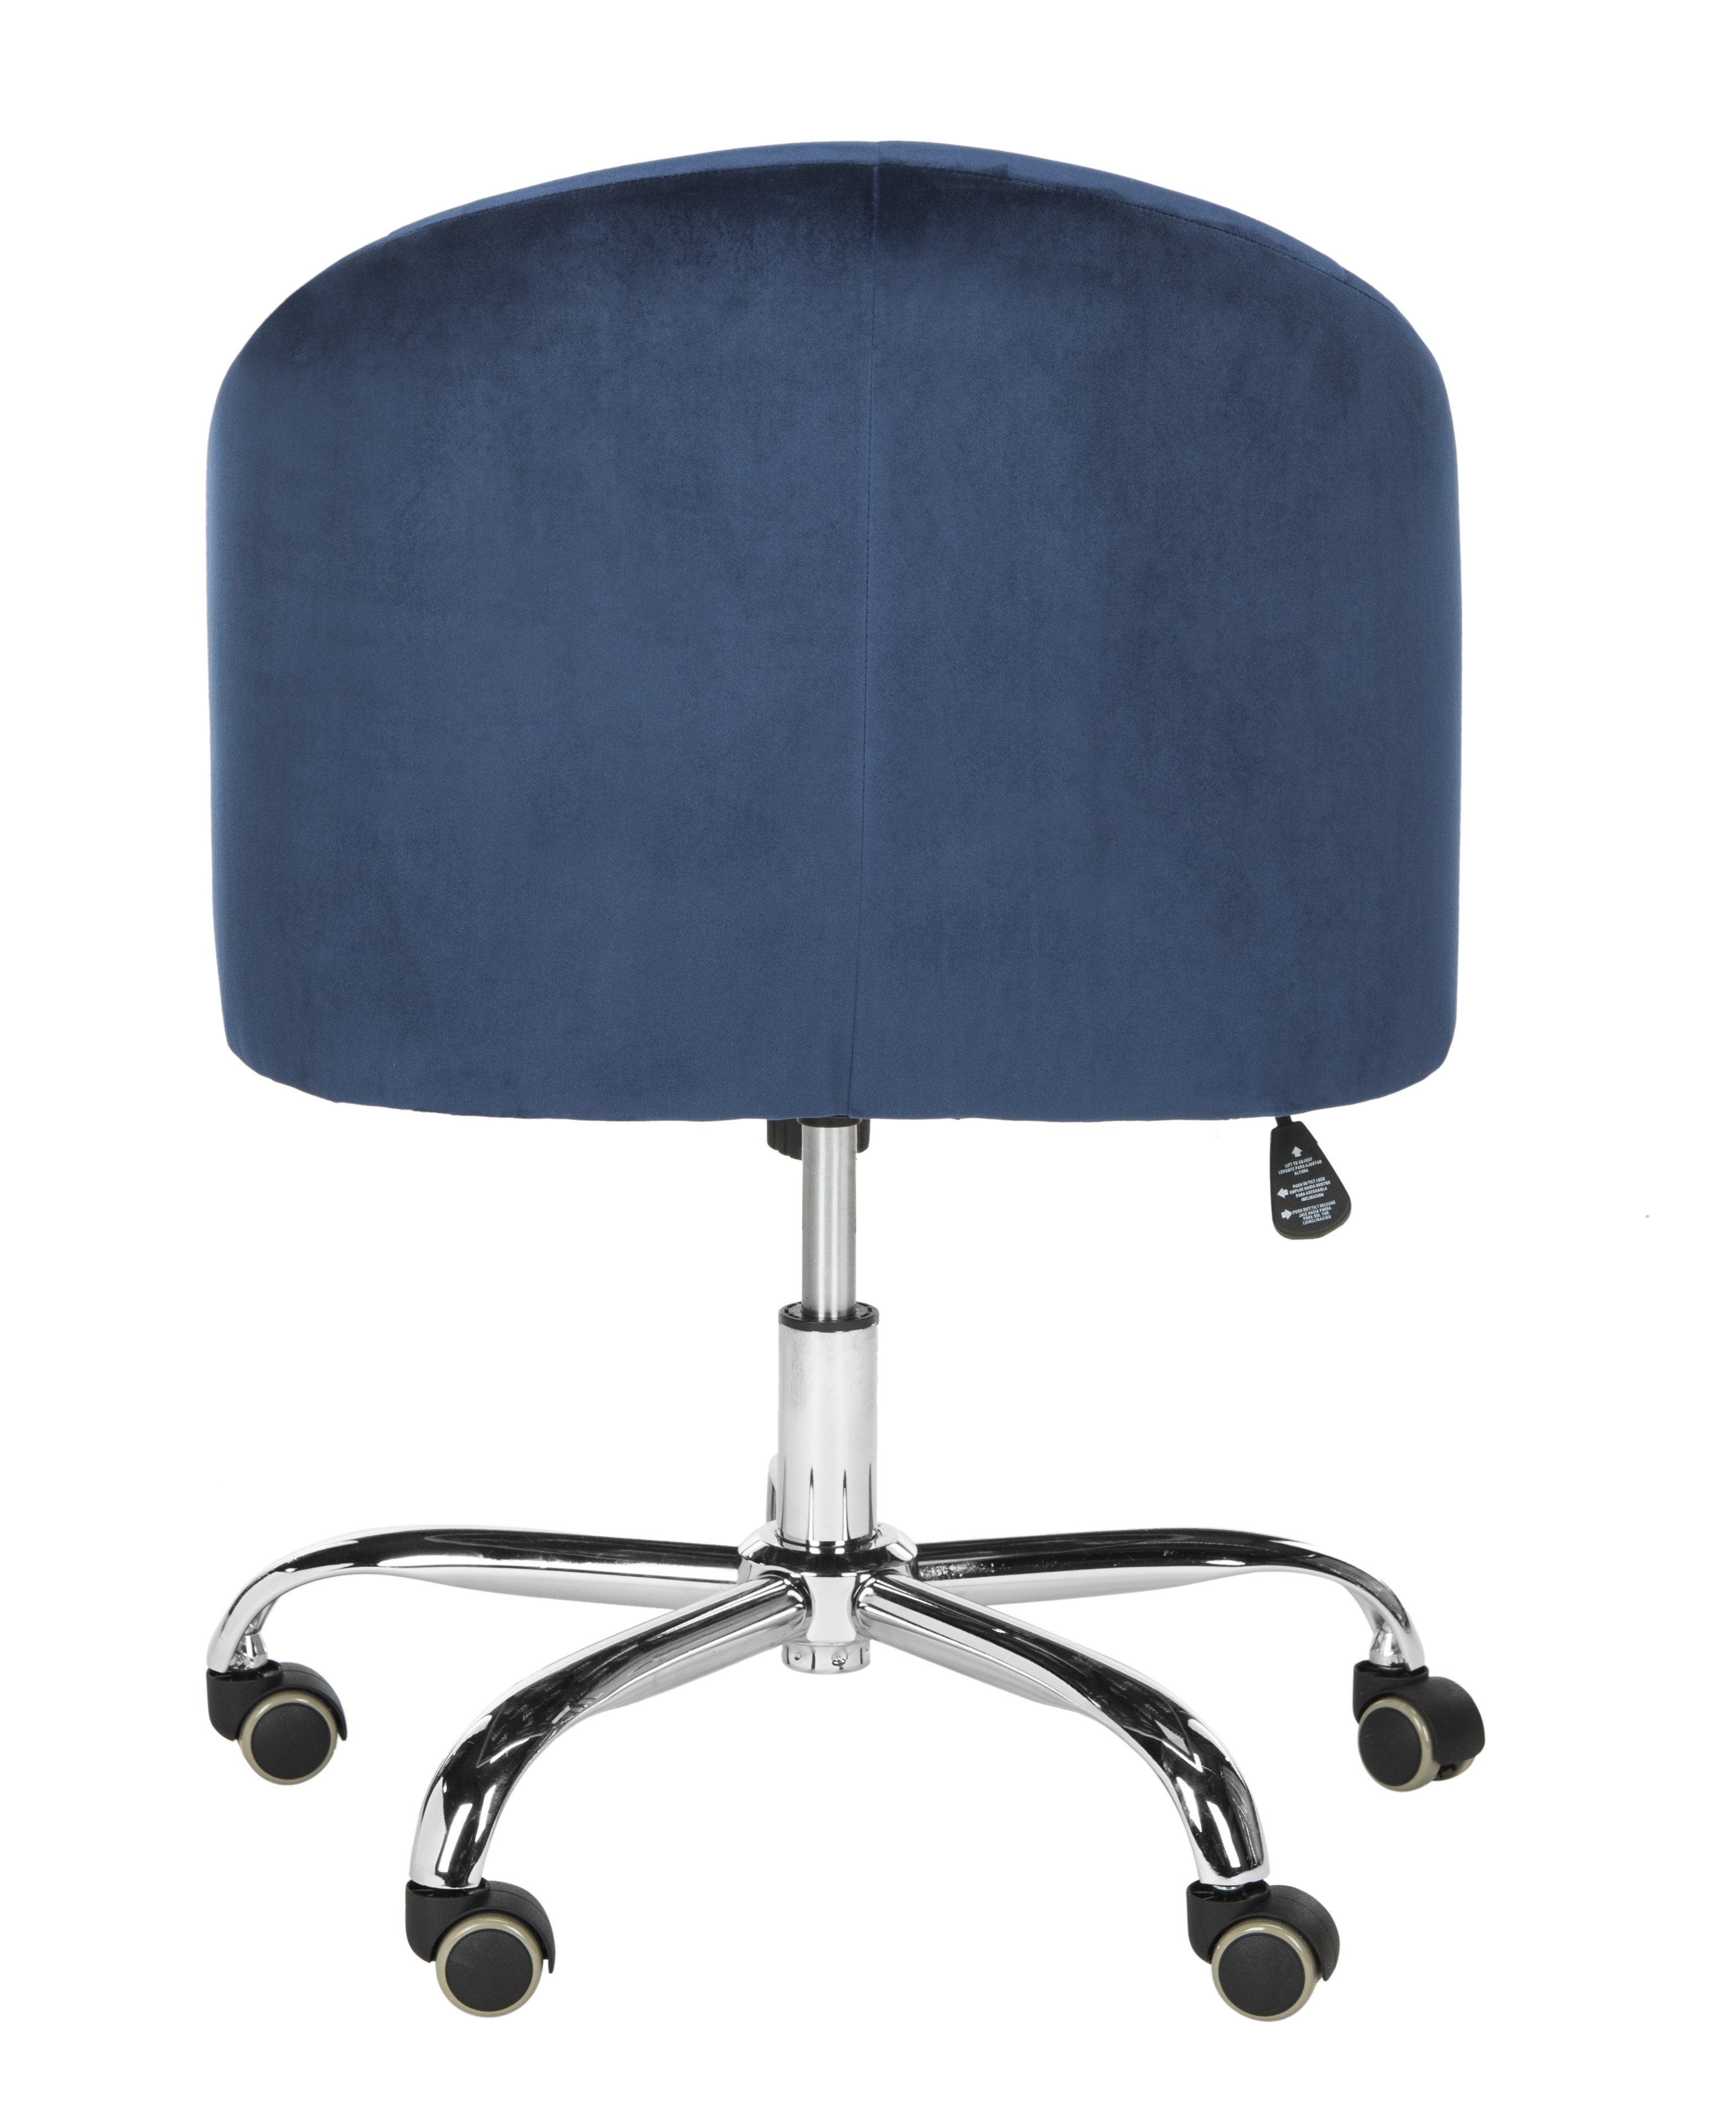 Amy Tufted Velvet Chrome Leg Swivel Office Chair - Navy/Chrome - Safavieh - Image 3